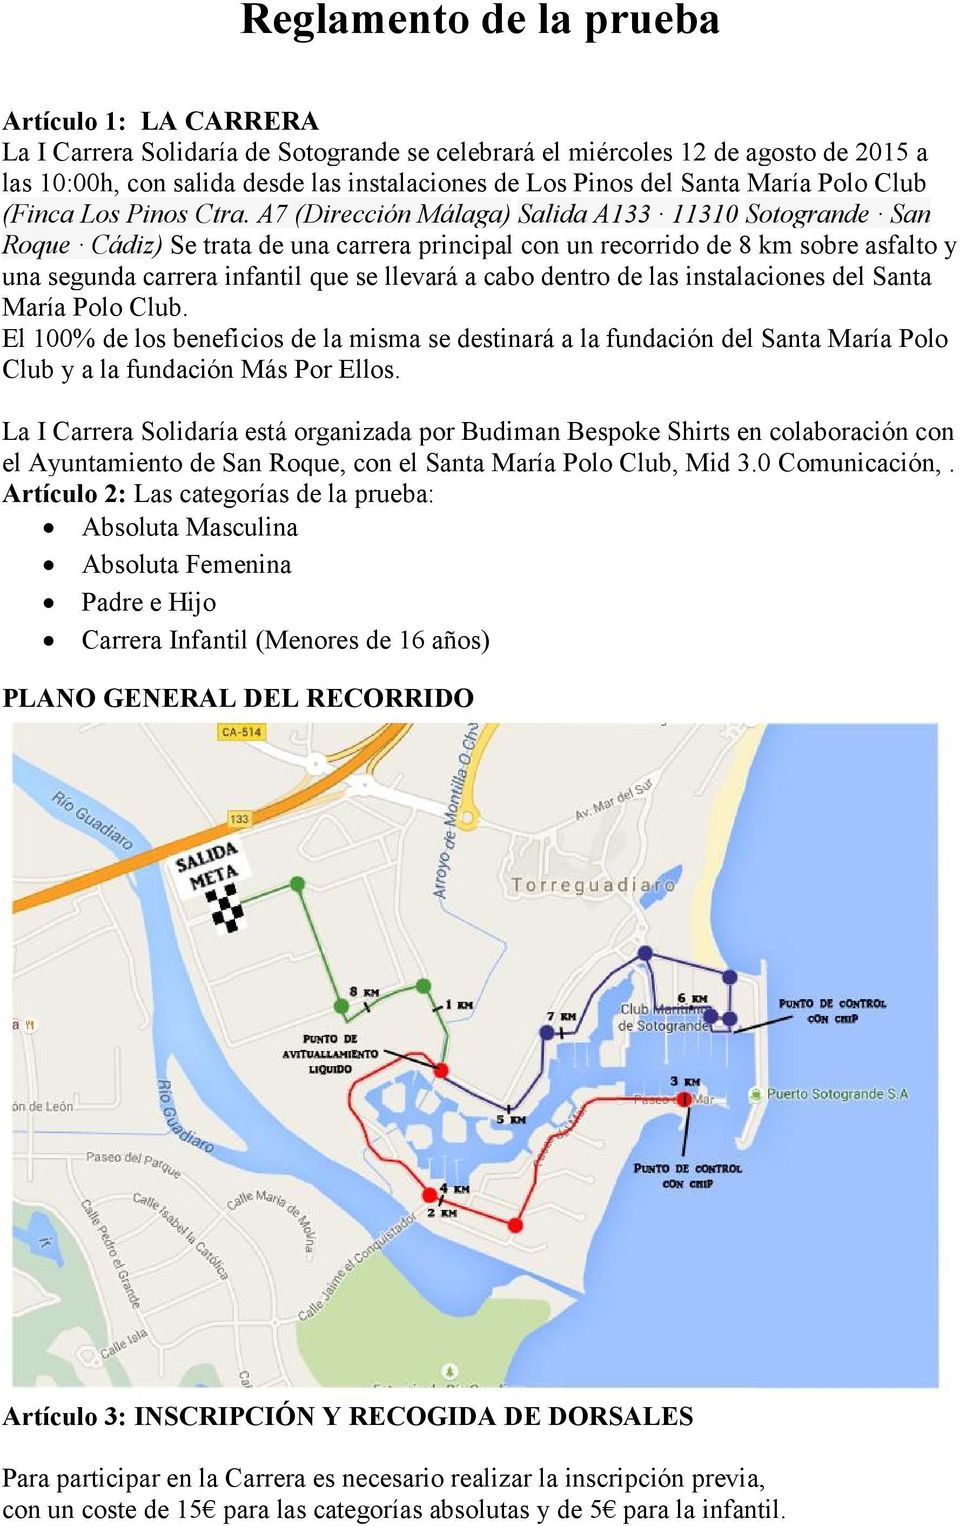 A7 (Dirección Málaga) Salida A133 11310 Sotogrande San Roque Cádiz) Se trata de una carrera principal con un recorrido de 8 km sobre asfalto y una segunda carrera infantil que se llevará a cabo